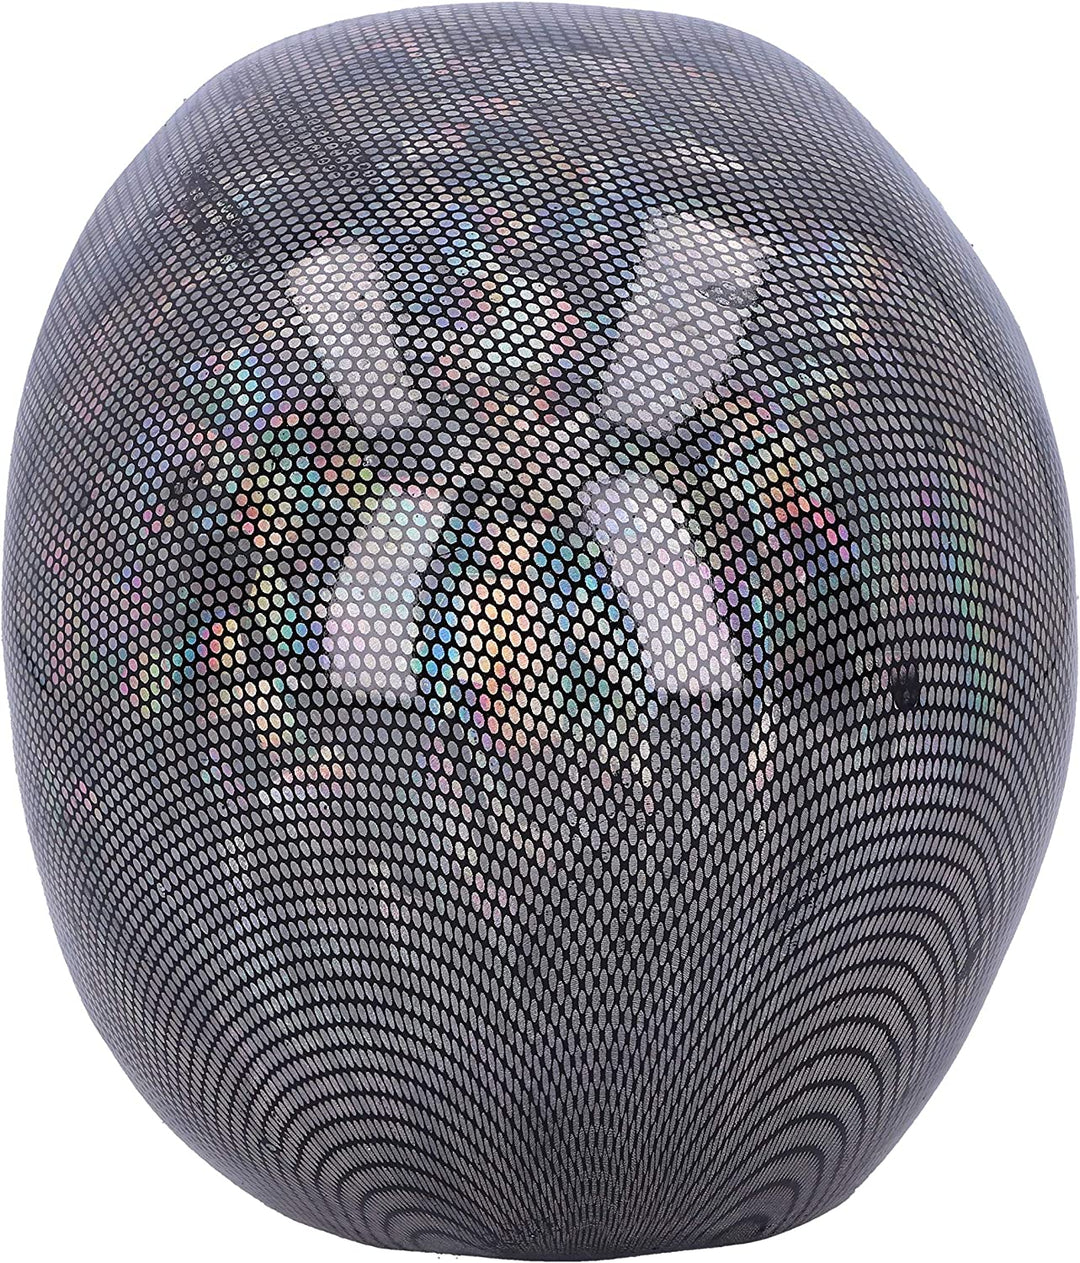 Nemesis Now holografisches silberfarbenes Fischnetz-Totenkopf-Ornament, 16,5 cm